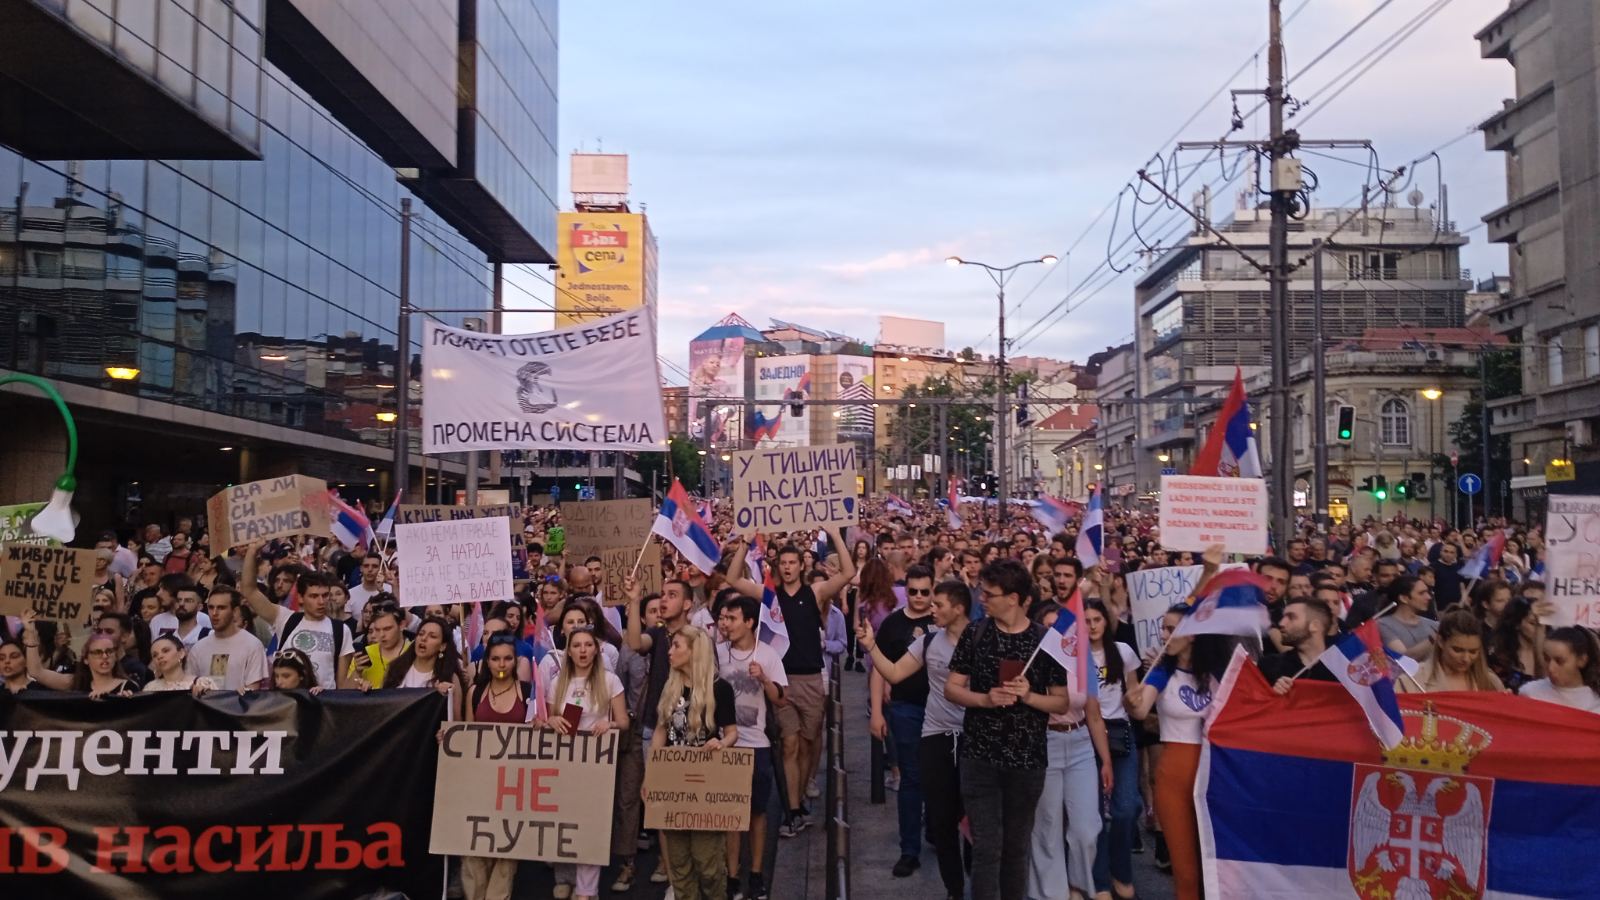 Završen šesti protest "Srbija protiv nasilja": Najavljeno novo okupljanje ako se ne ispune zahtevi 2